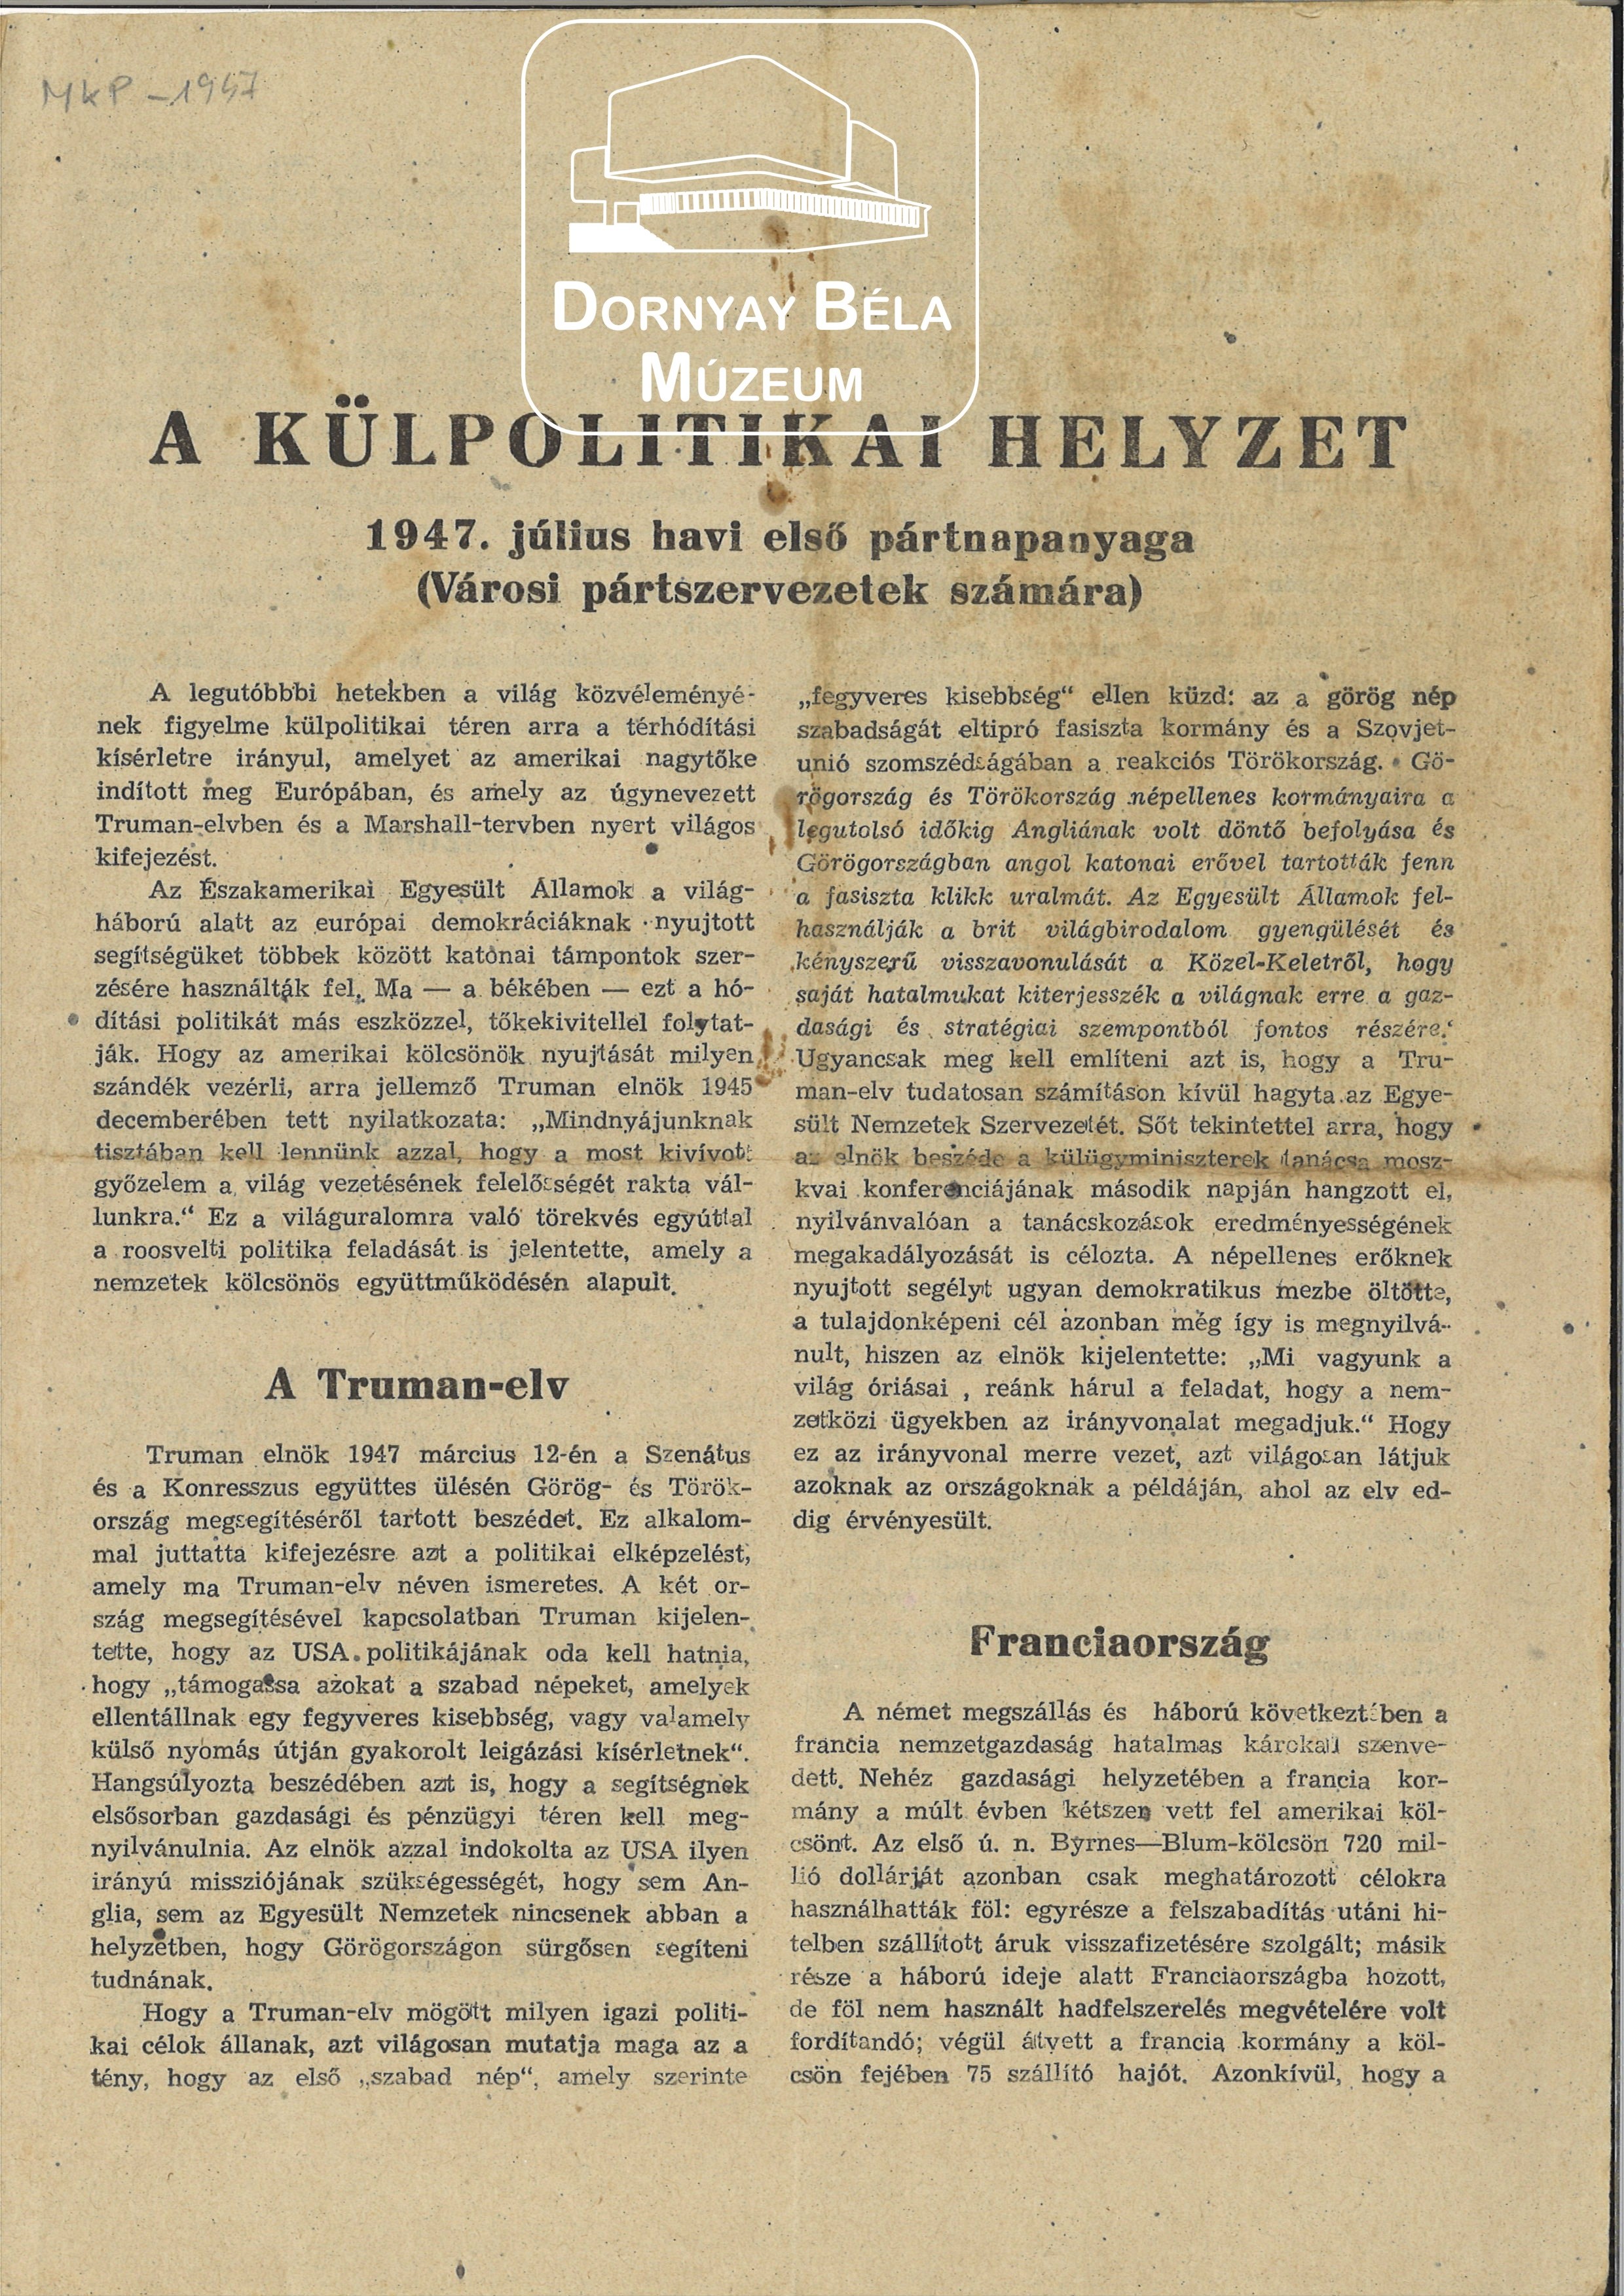 MKP röpirat a külpolitikai helyzetről (Dornyay Béla Múzeum, Salgótarján CC BY-NC-SA)